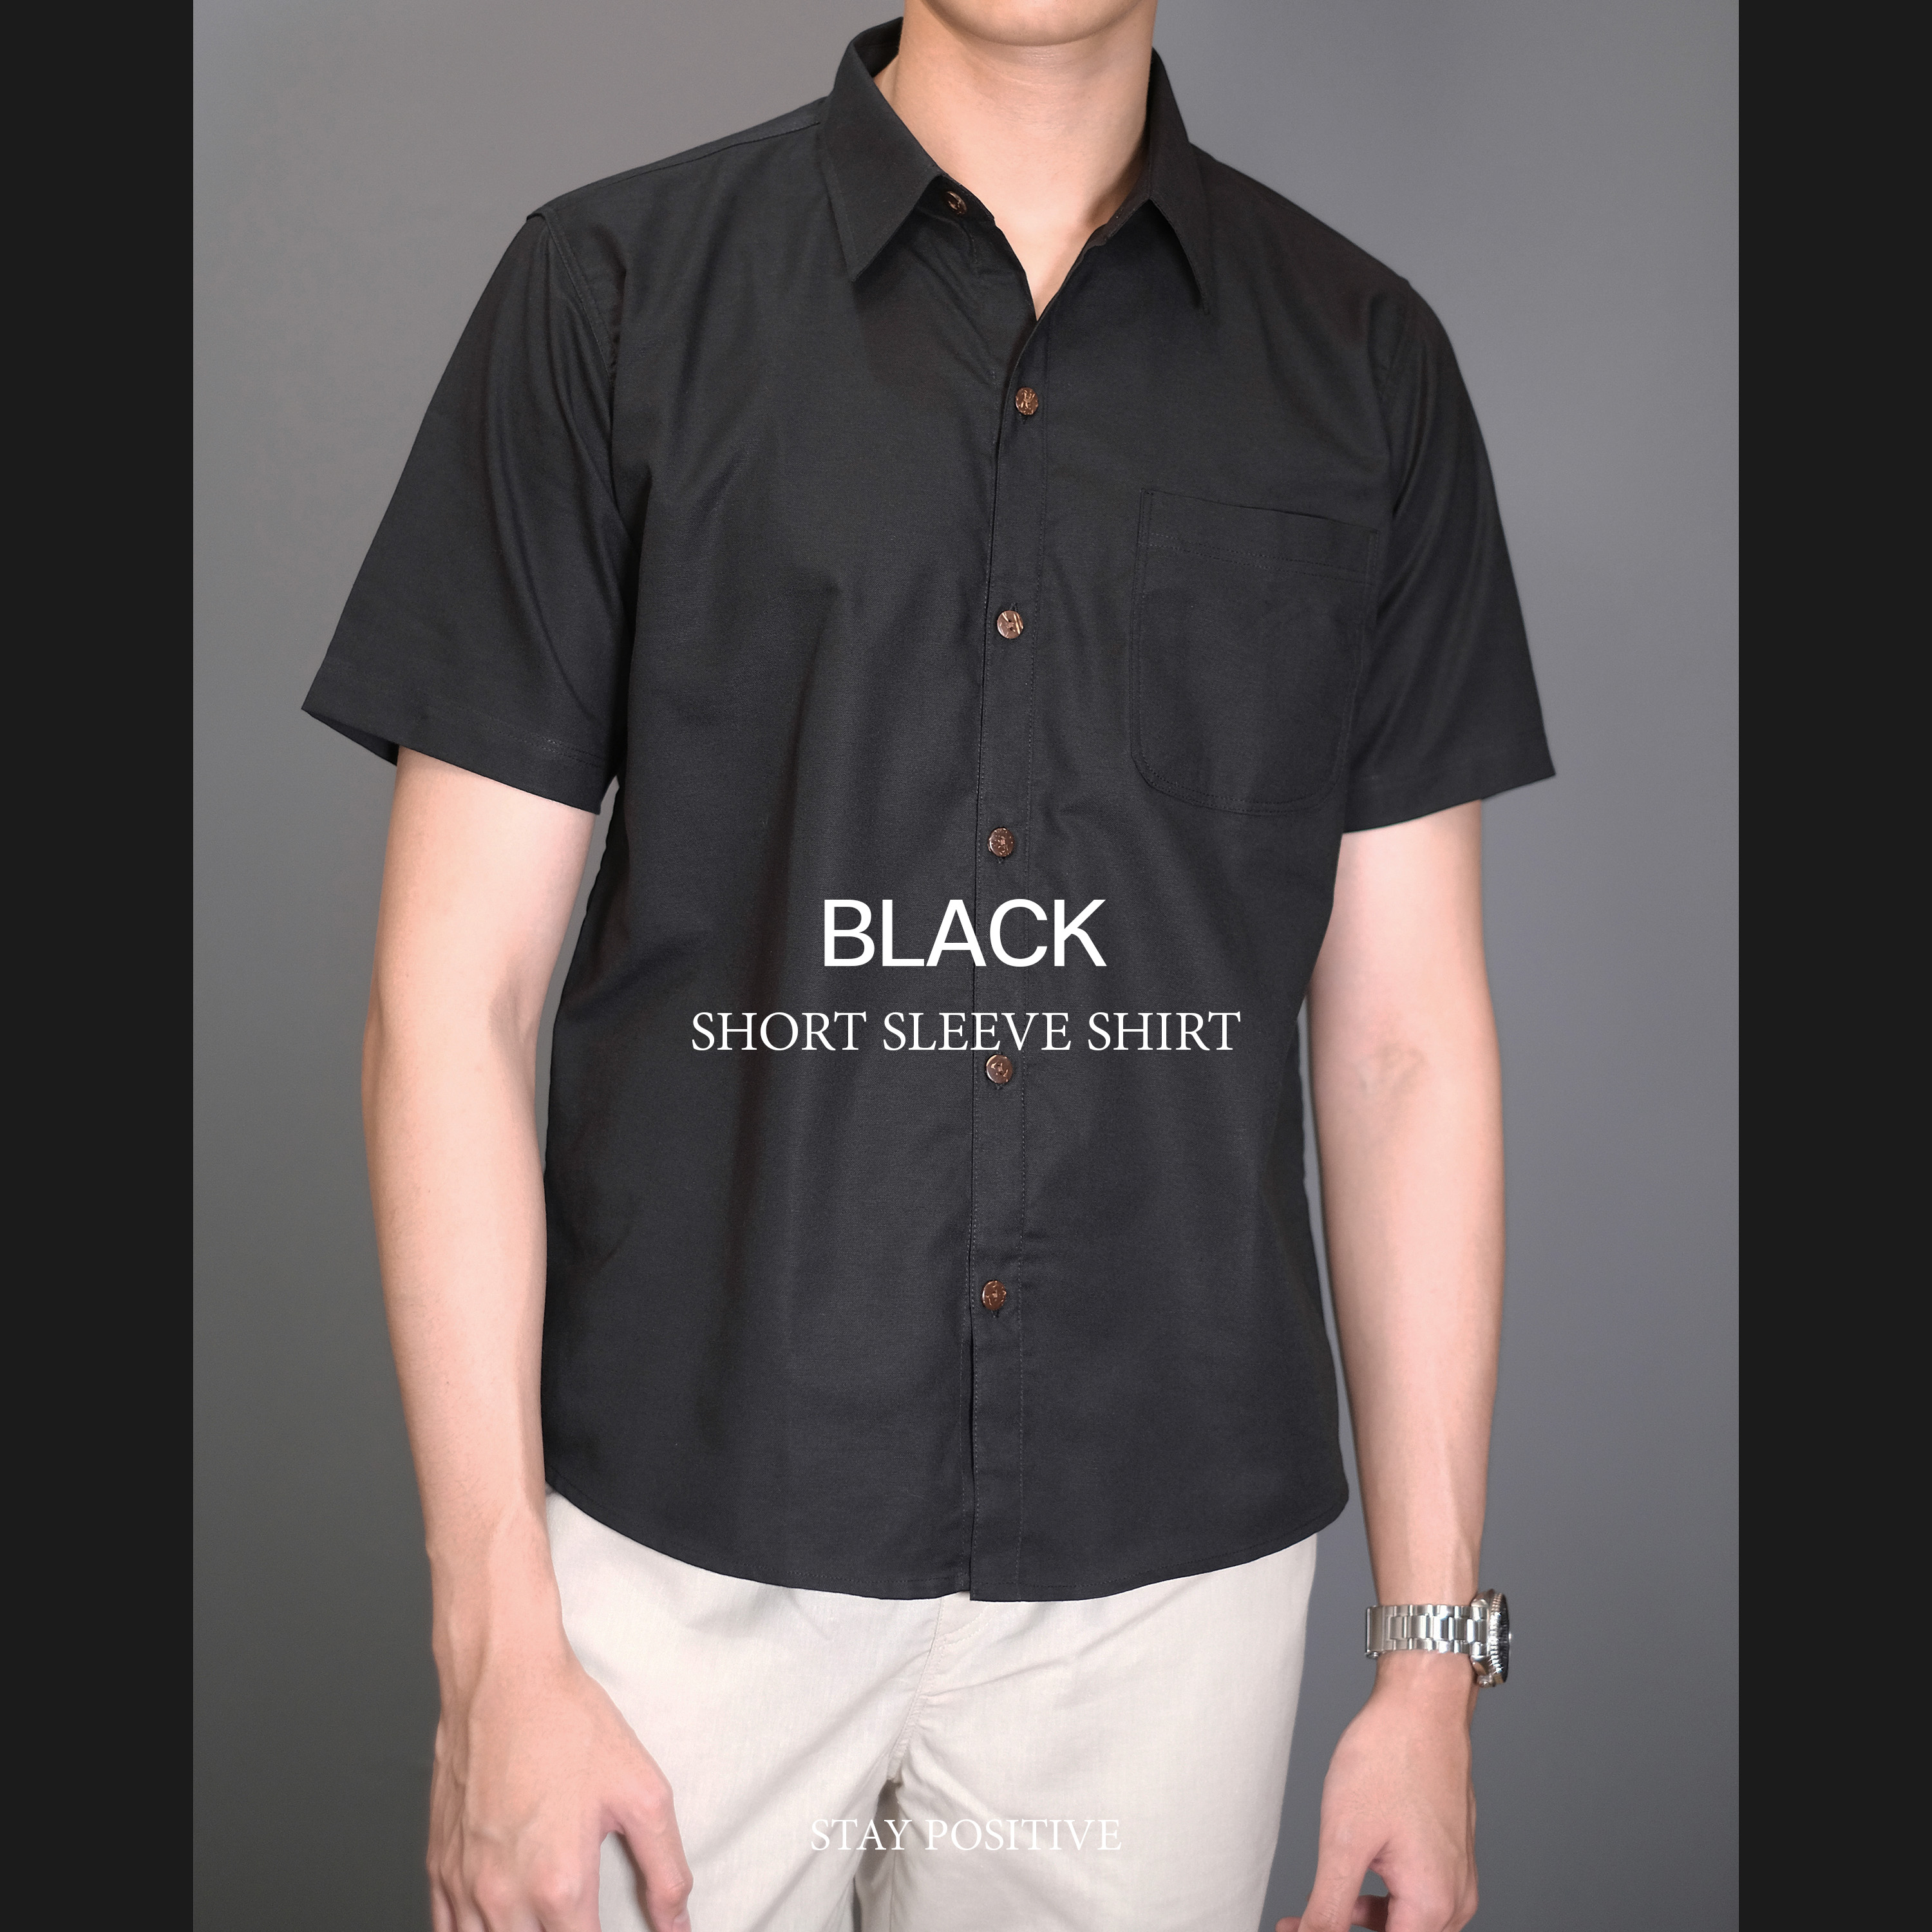 Short Sleeve Shirt ราคาถูก ซื้อออนไลน์ที่ - ก.ย. 2022 | Lazada.co.th